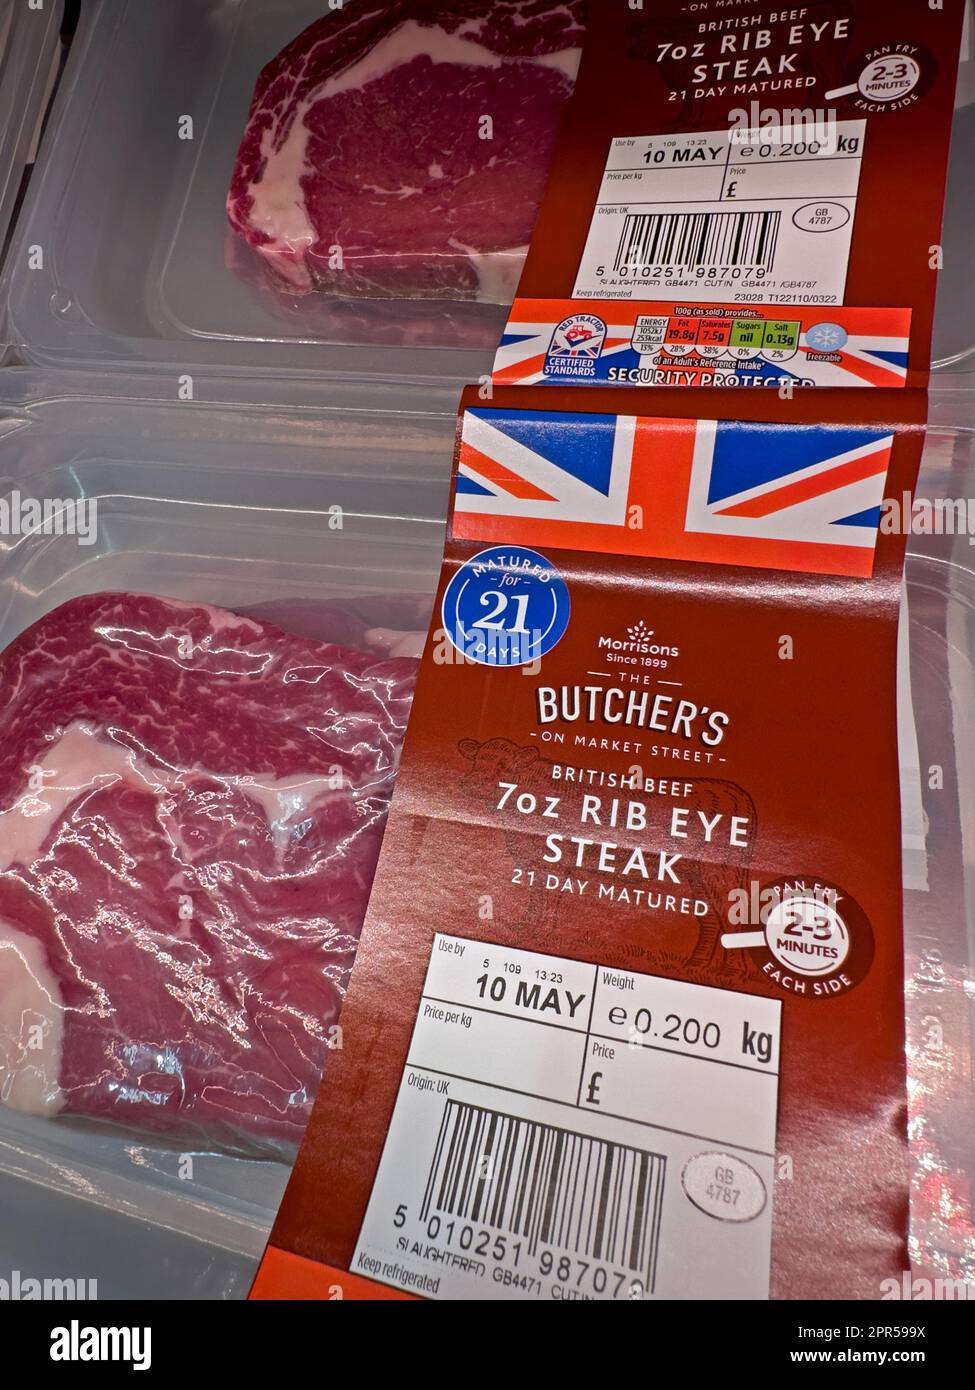 Viande rouge de boeuf - 7oz Rib Eye steak au supermarché Morrisons, détaillant de nourriture britannique en concurrence avec les escompteurs, Angleterre, Royaume-Uni Banque D'Images